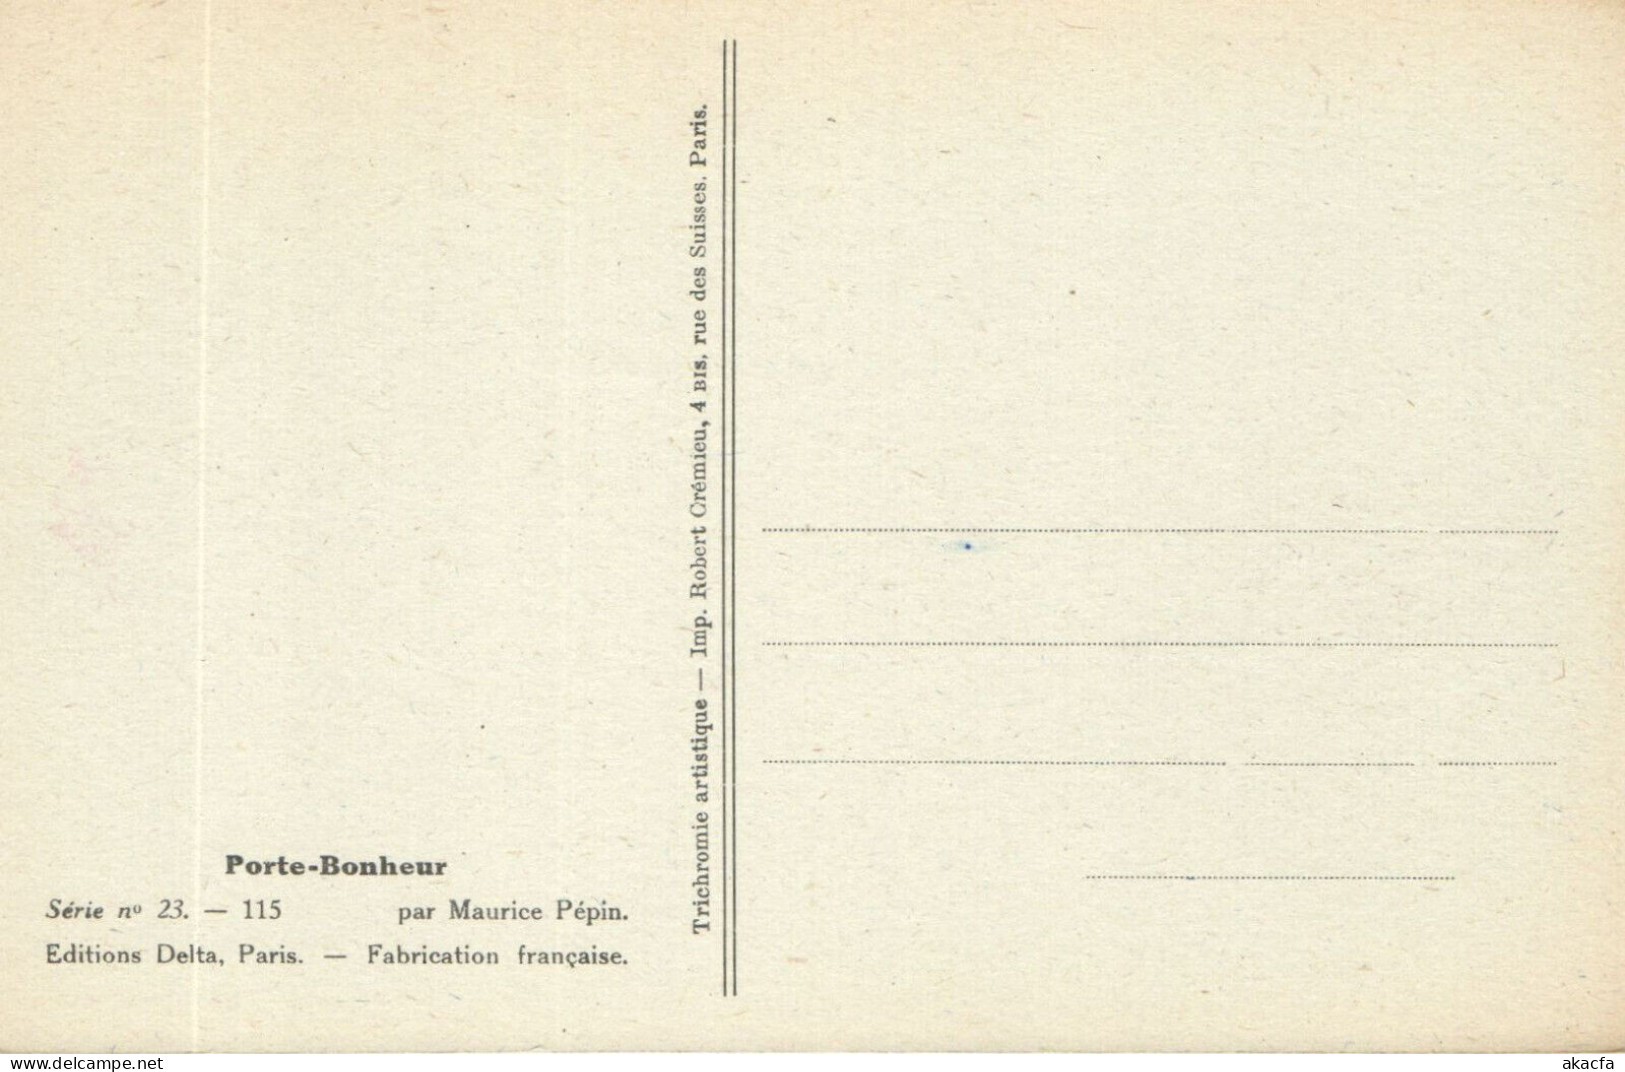 PC ARTIST SIGNED, M. PÉPIN, RISQUE, PORTE BONHEUR, Vintage Postcard (b50560) - Pepin